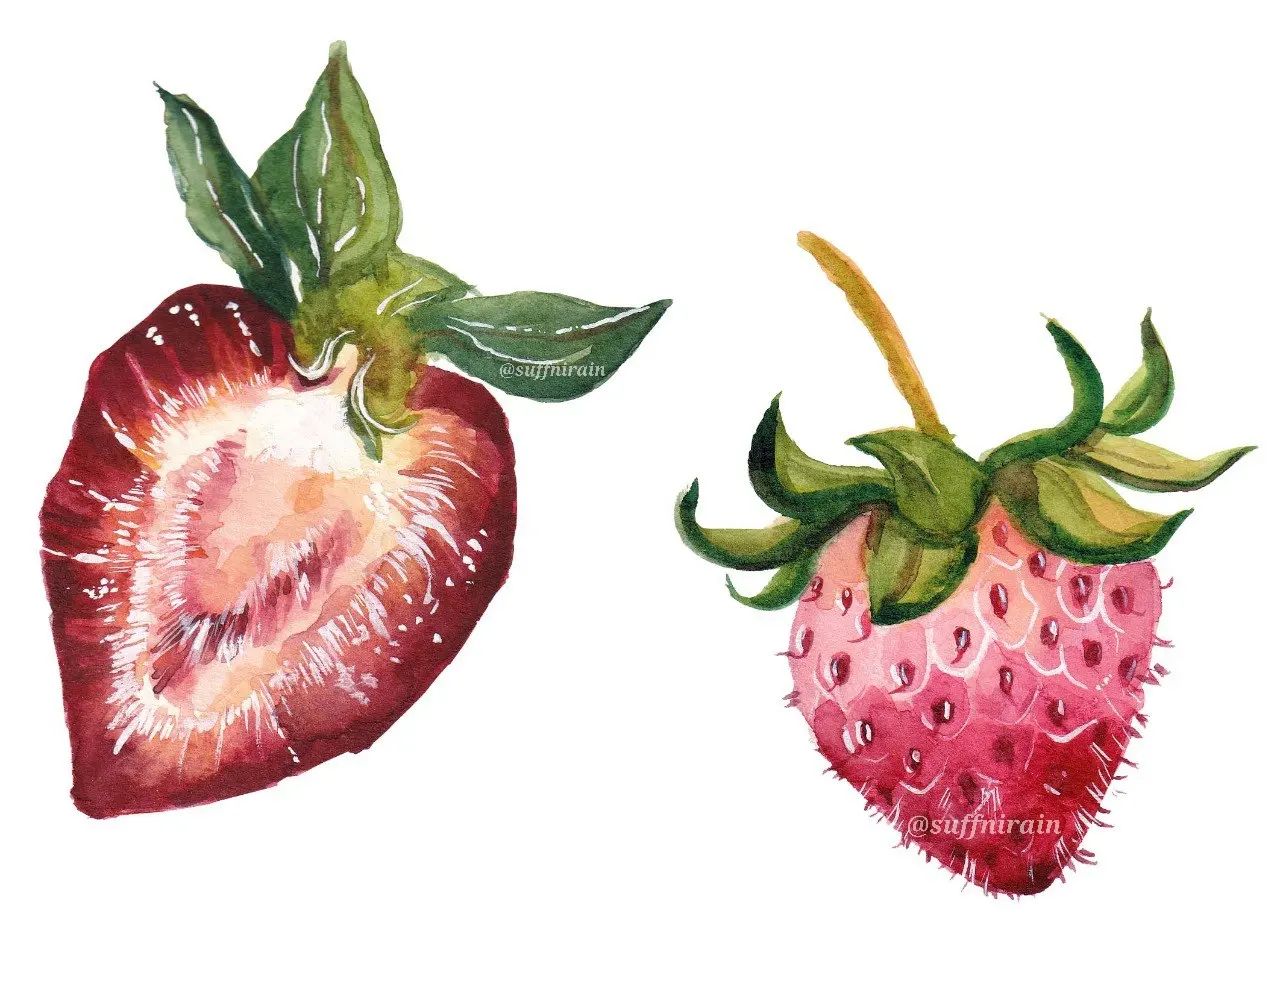 🍓🍓🍓
.
#suffnirain #watercolor #watercolorph #artph #mijello #mijellomissiongold #strawberry #foodillustrationph #foodillustration